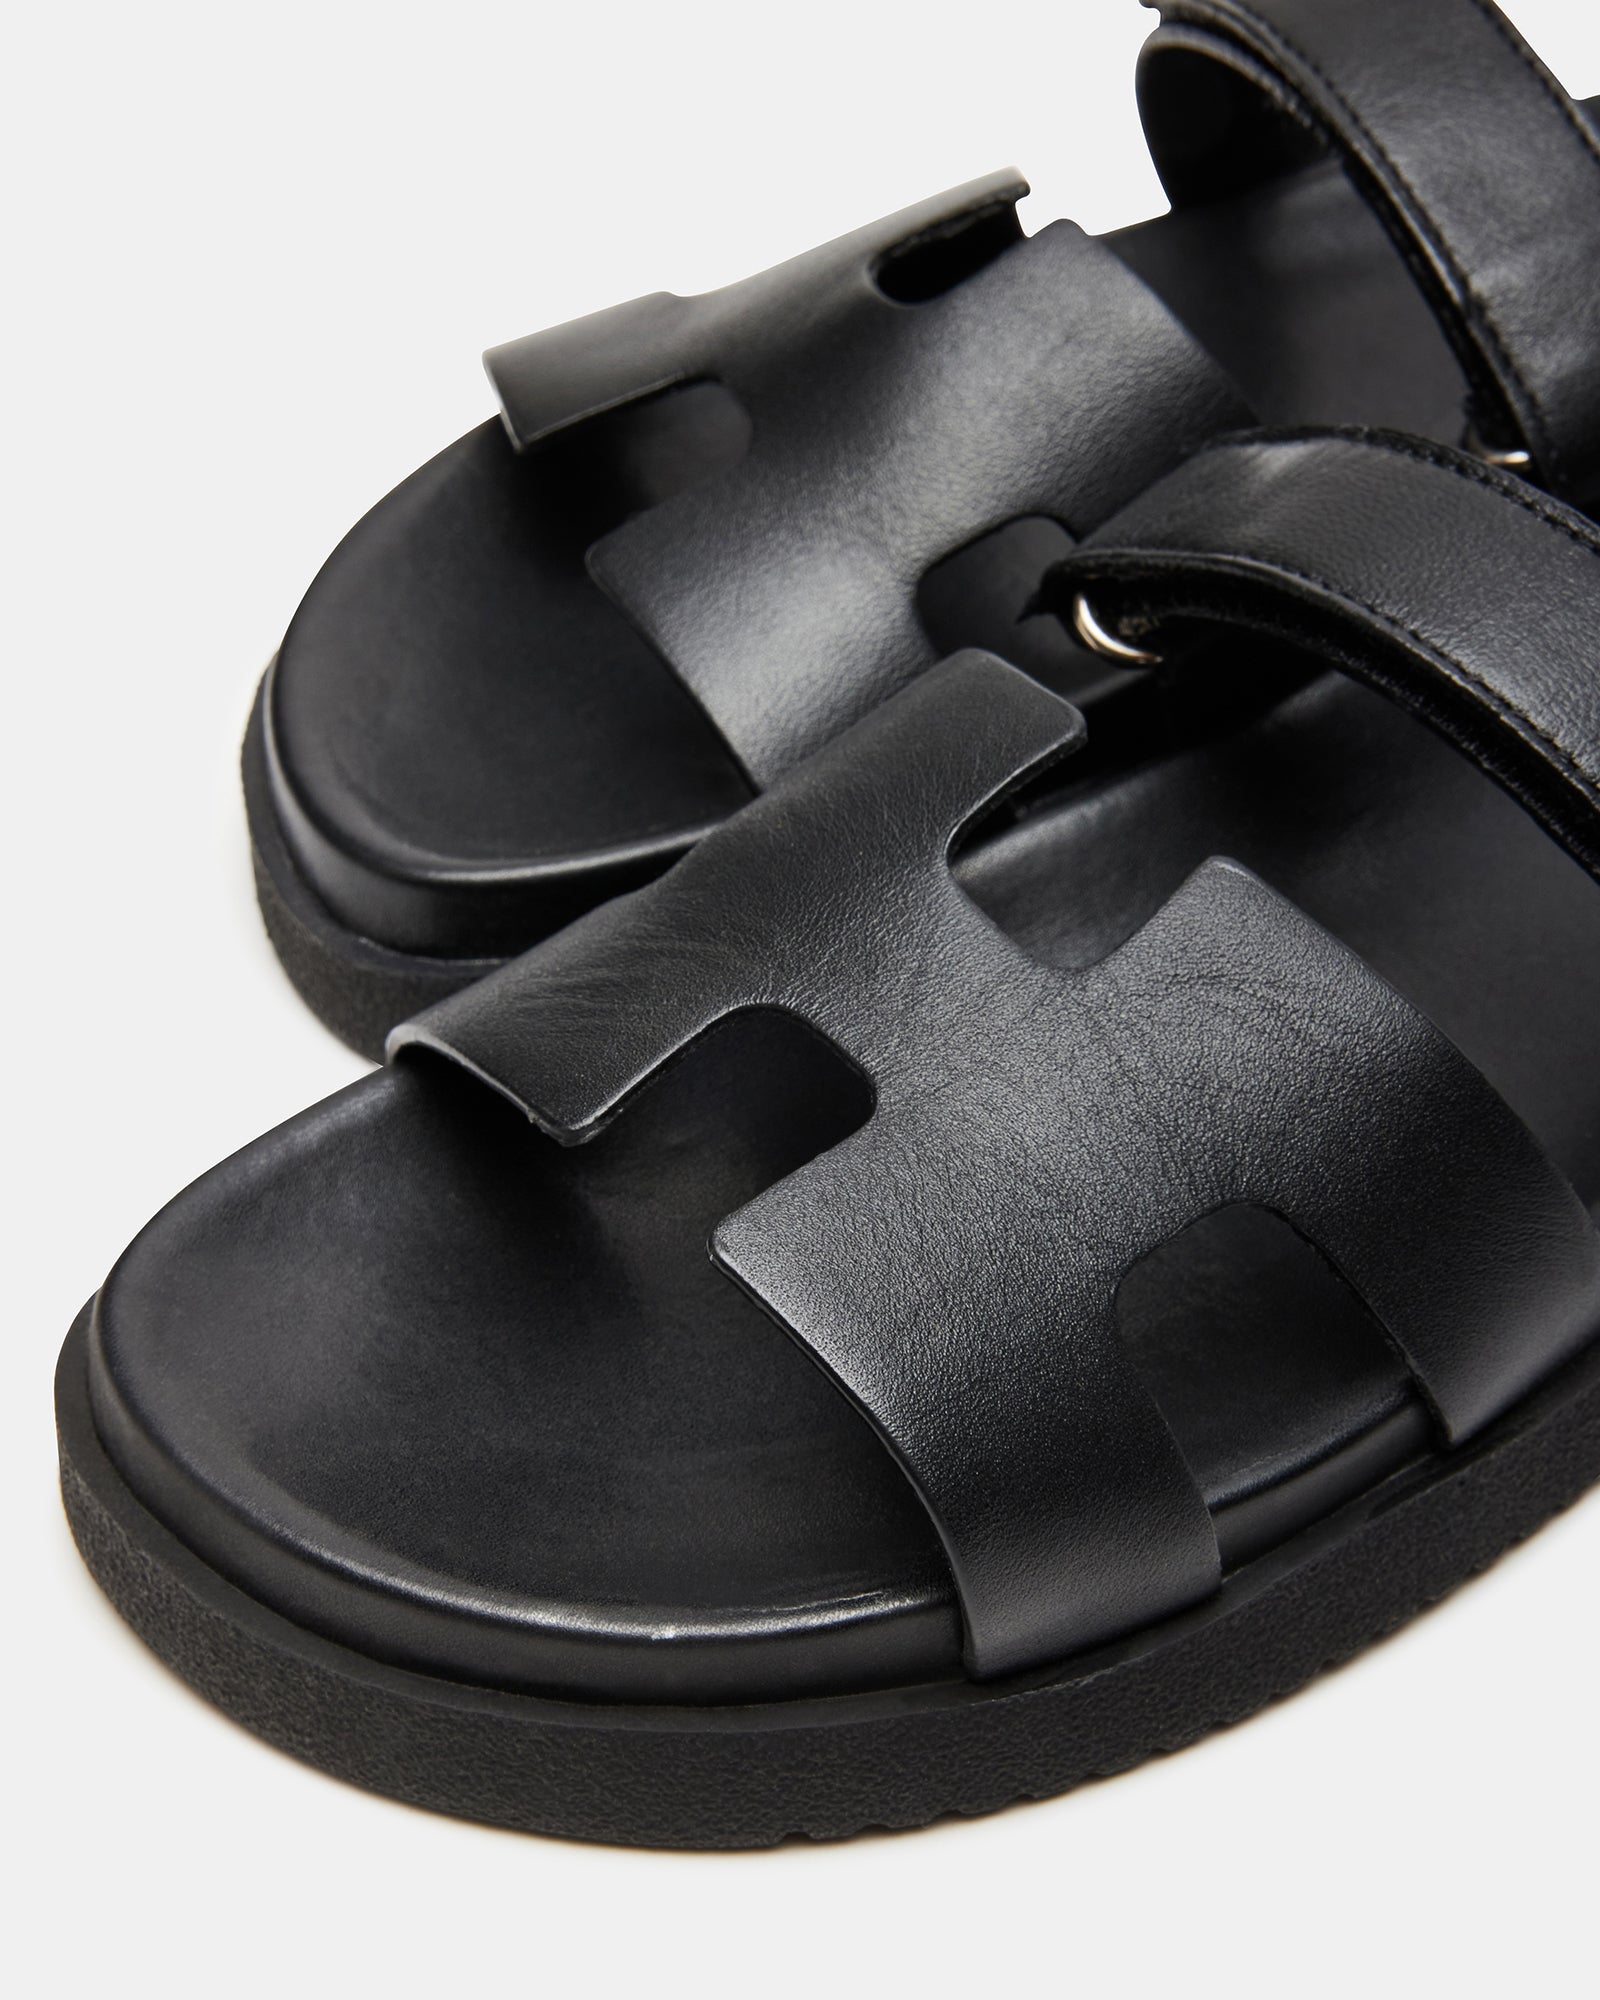 MAYVEN Black Leather Flatform Slide Sandal | Women's Sandals – Steve Madden